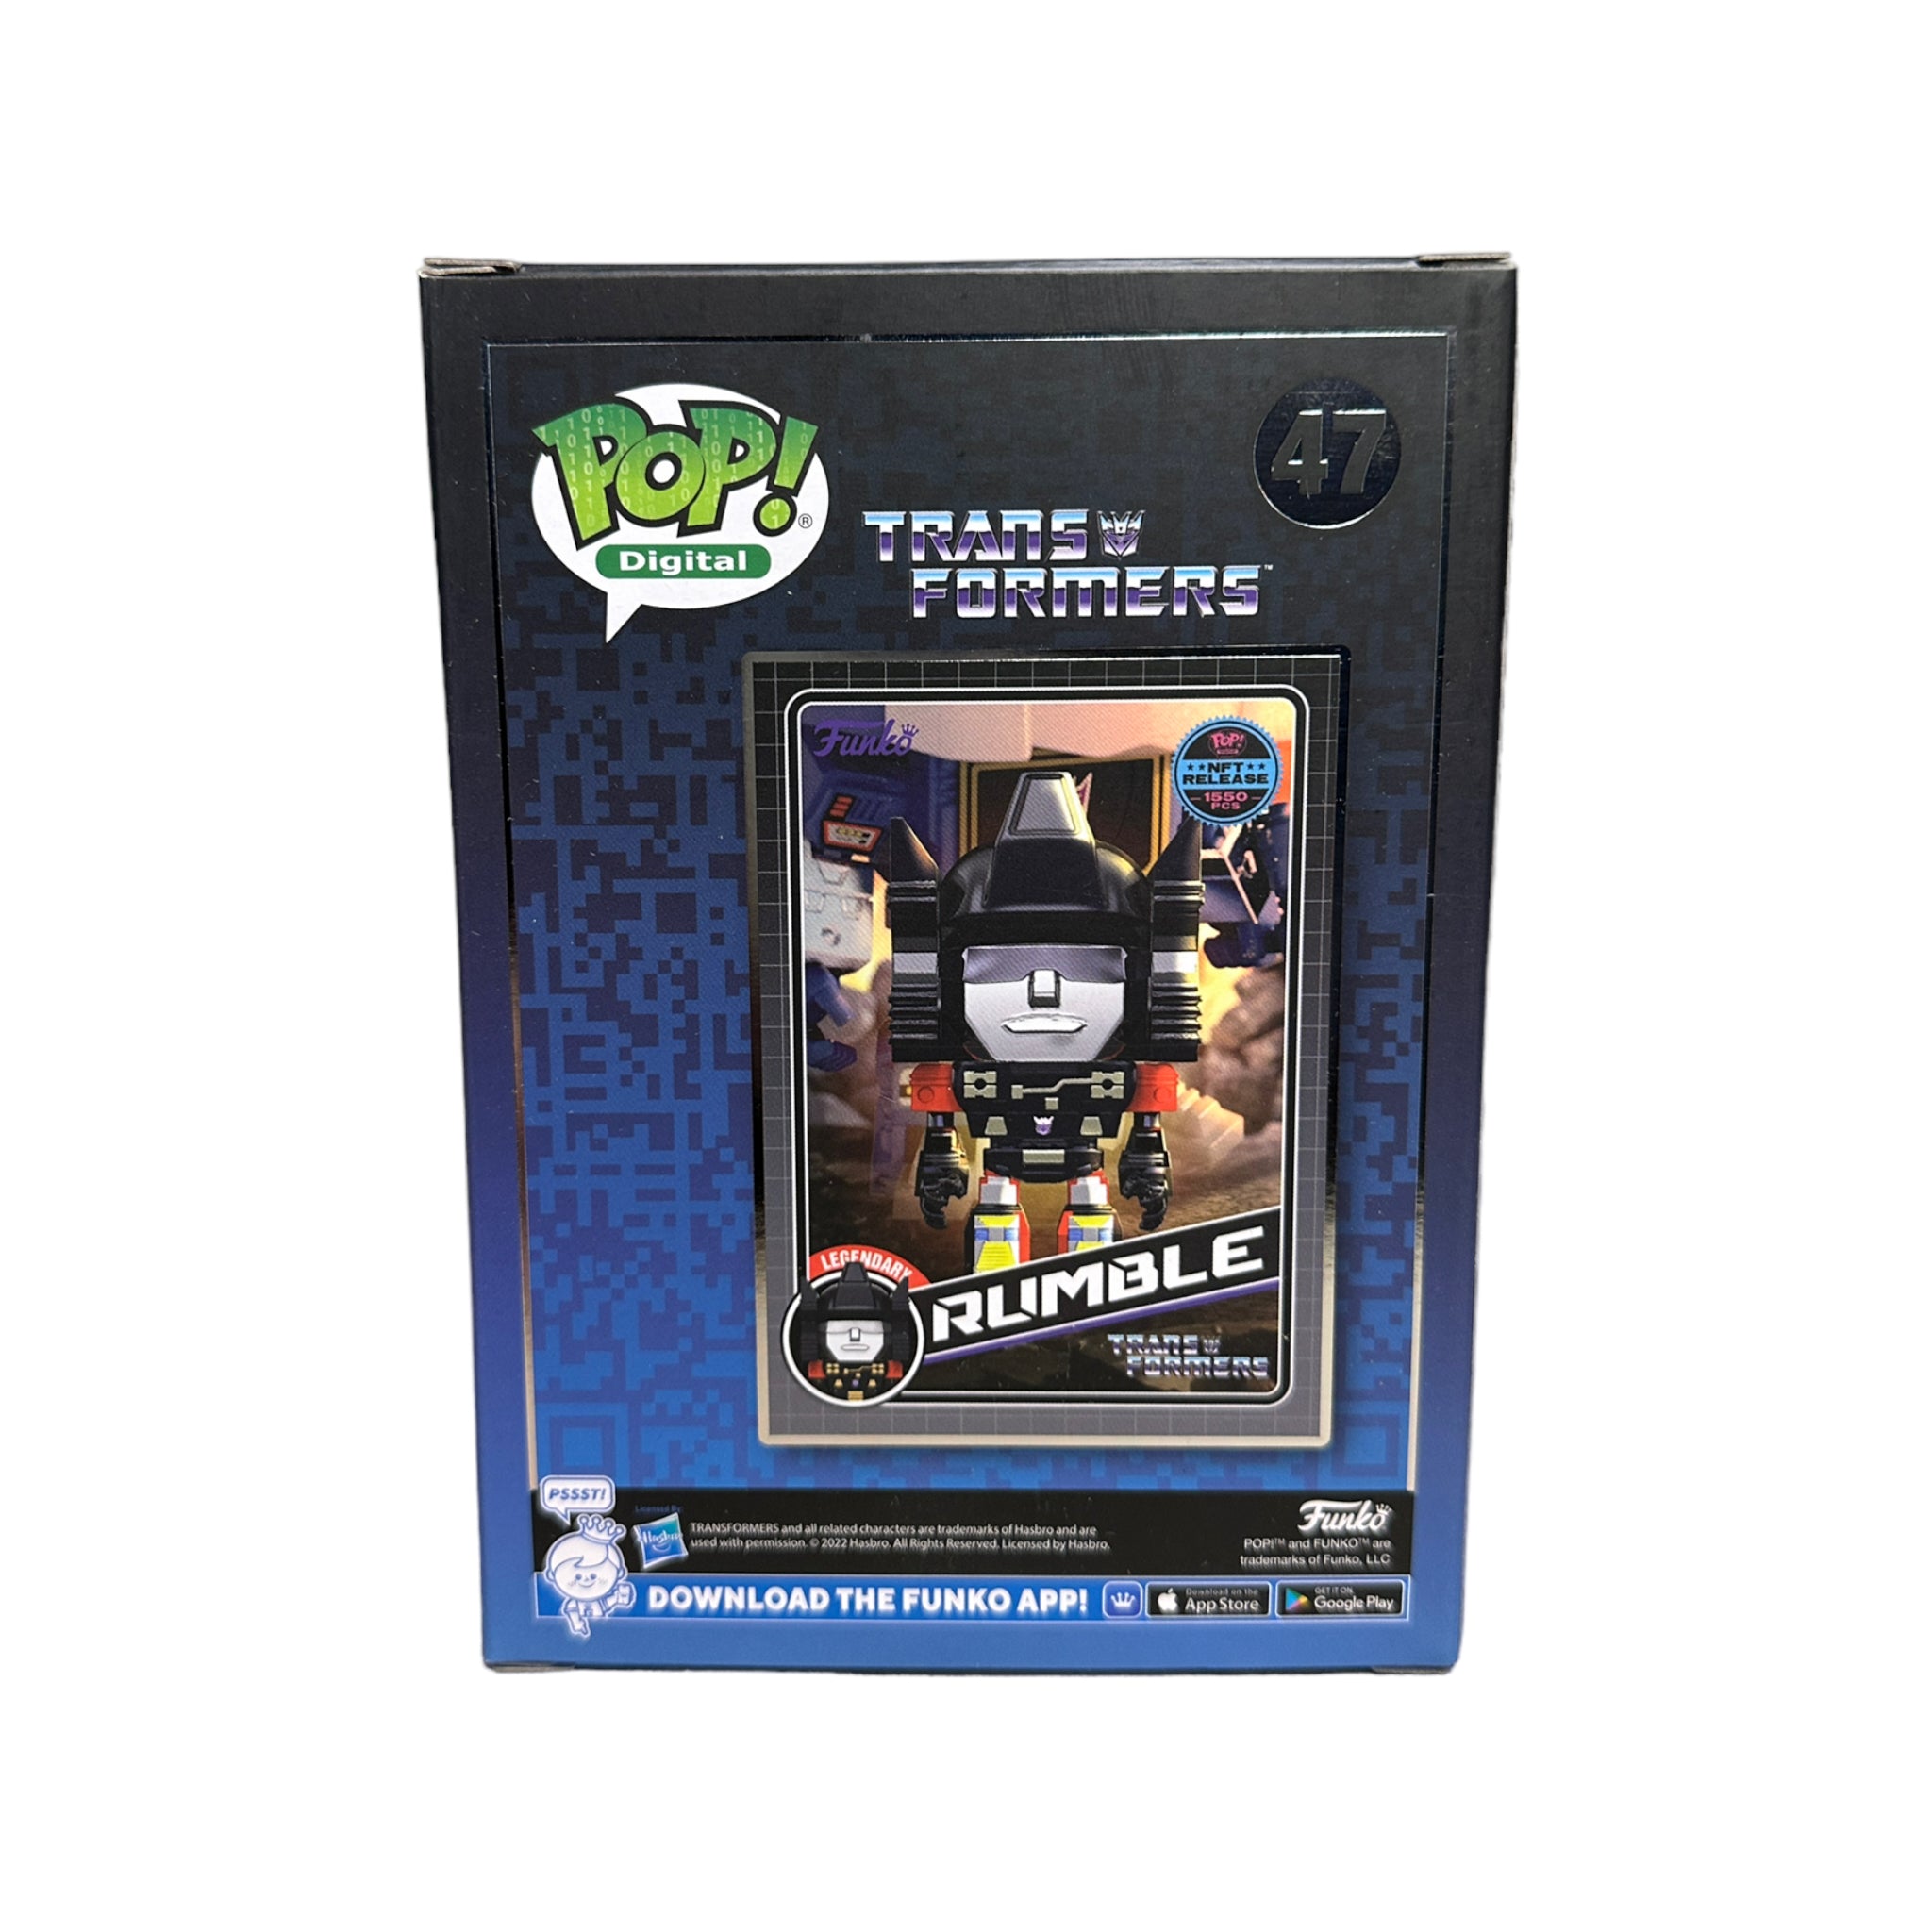 Rumble #47 Funko Pop! - Transformers - NFT Release Exclusive LE1550 Pcs - Condition 9.5/10